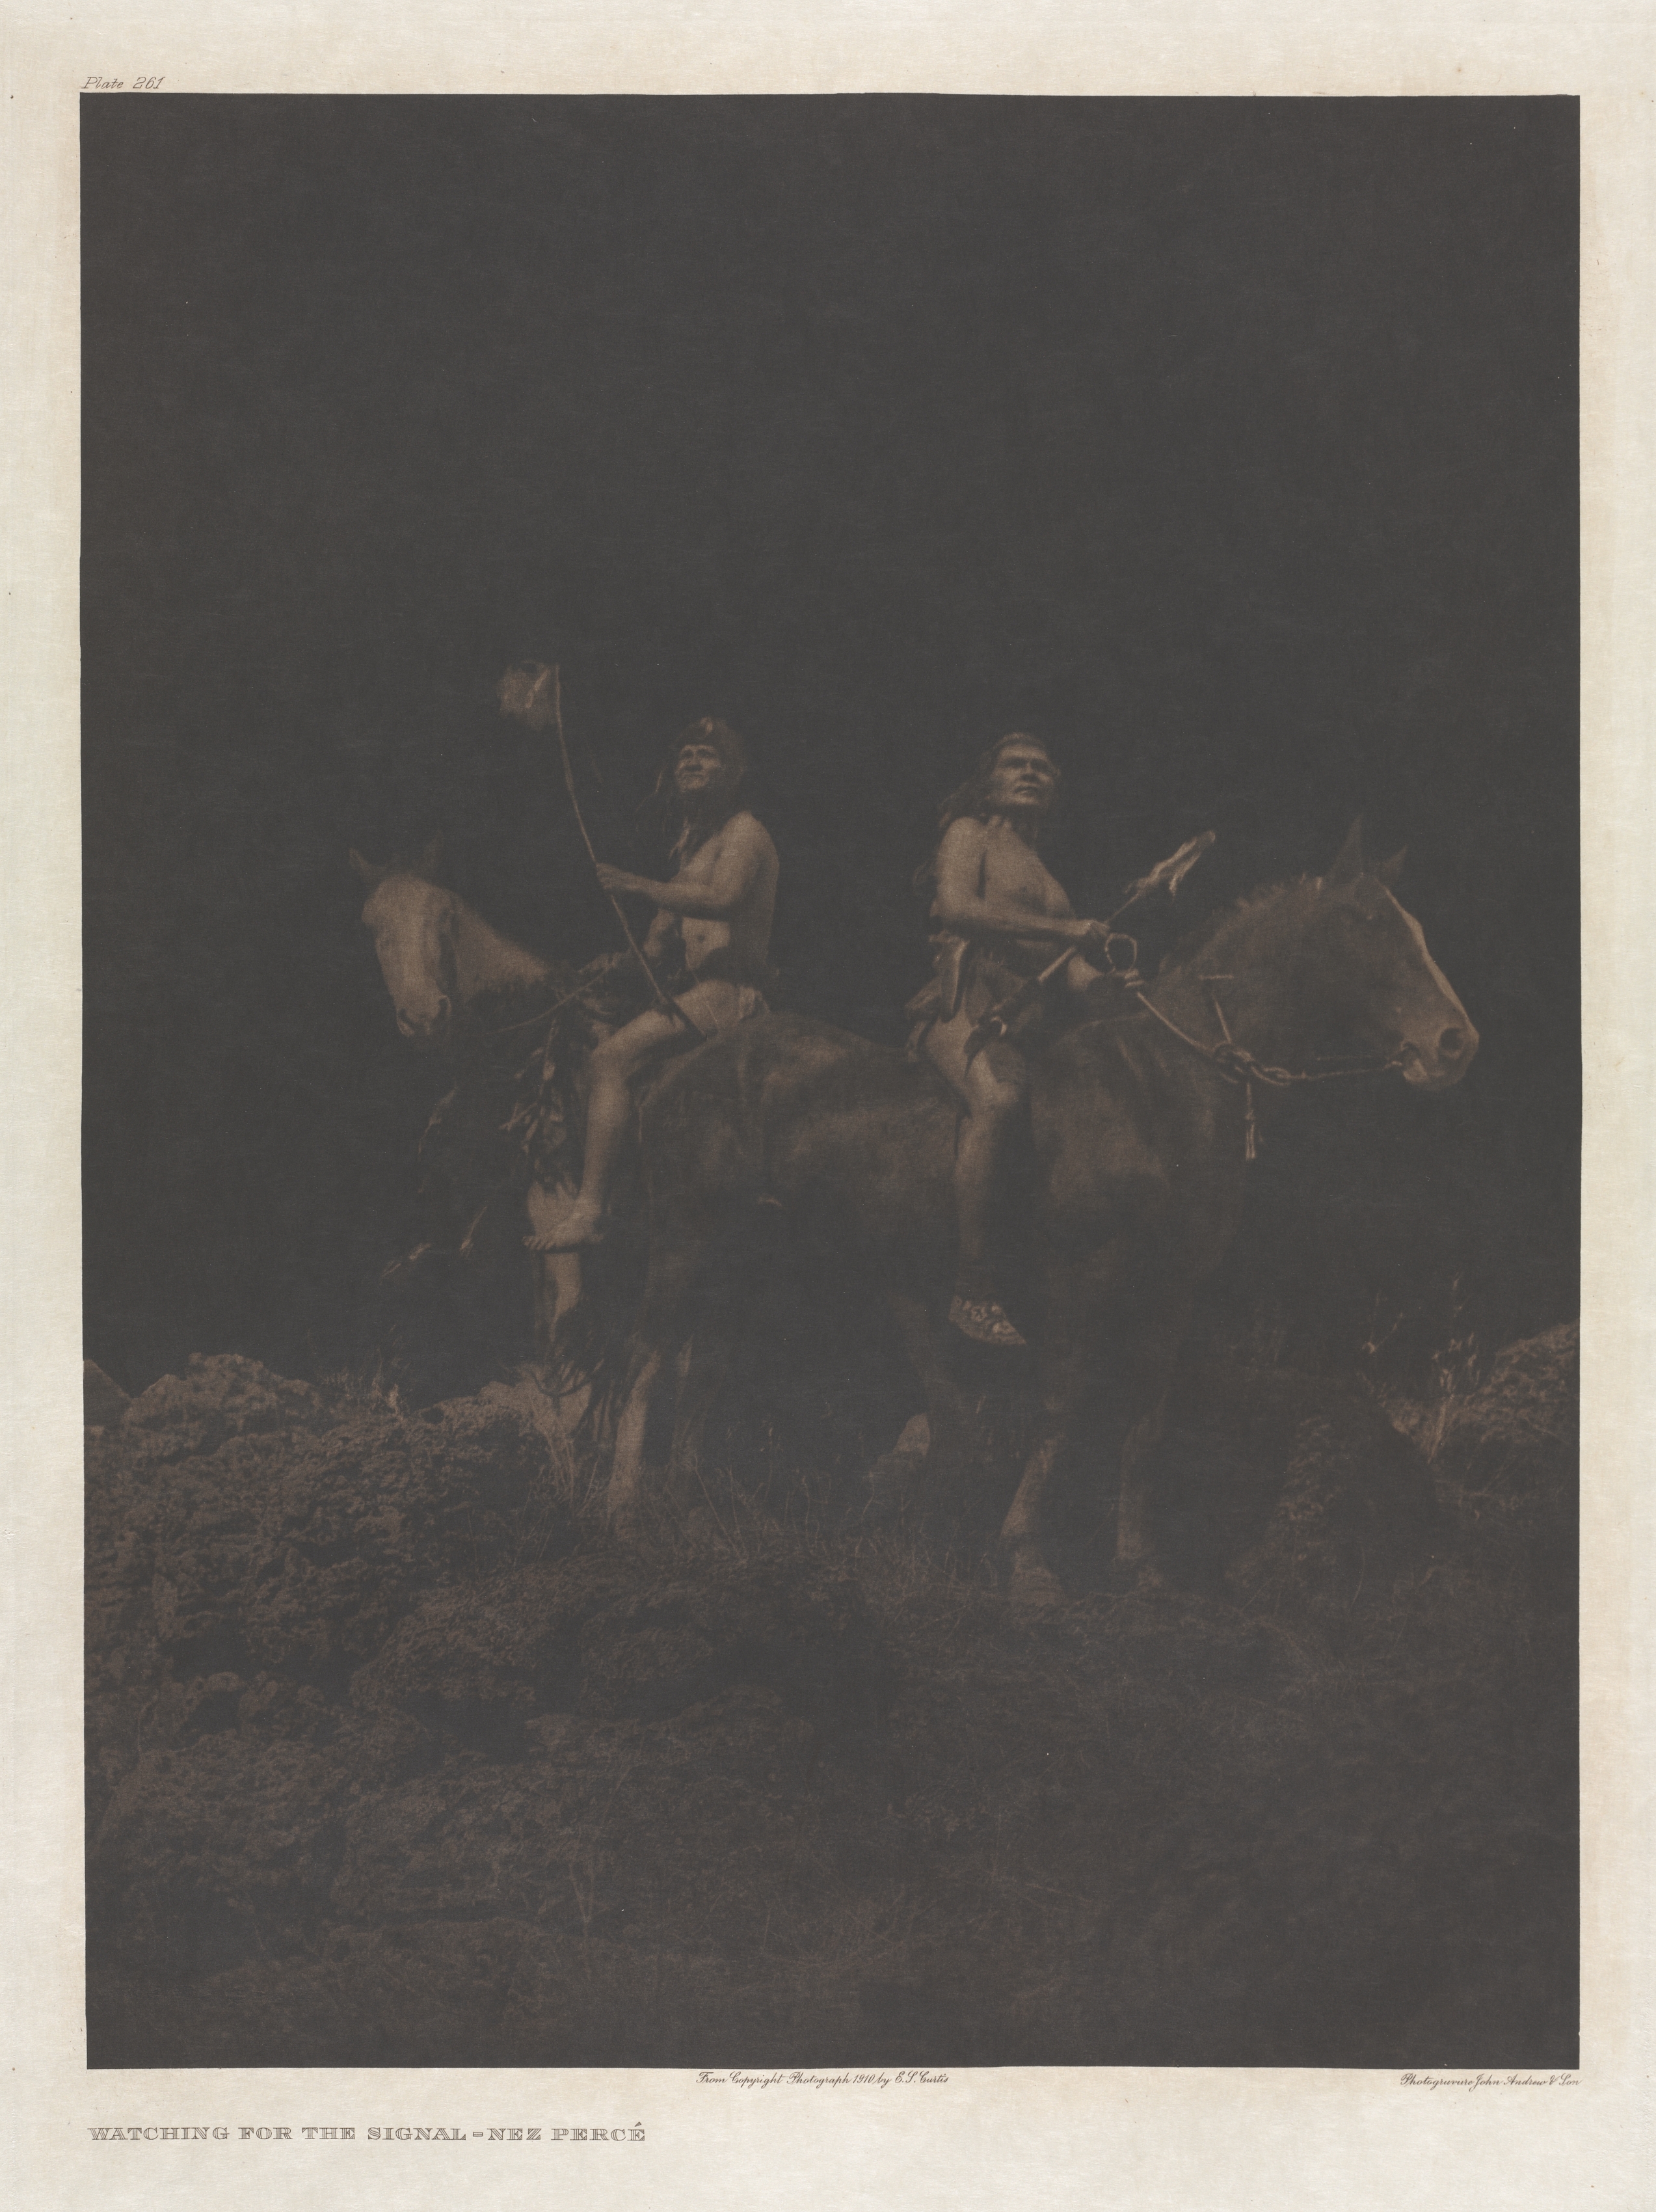 Portfolio VIII, Plate 261: Watching for the Signal - Nez Percé